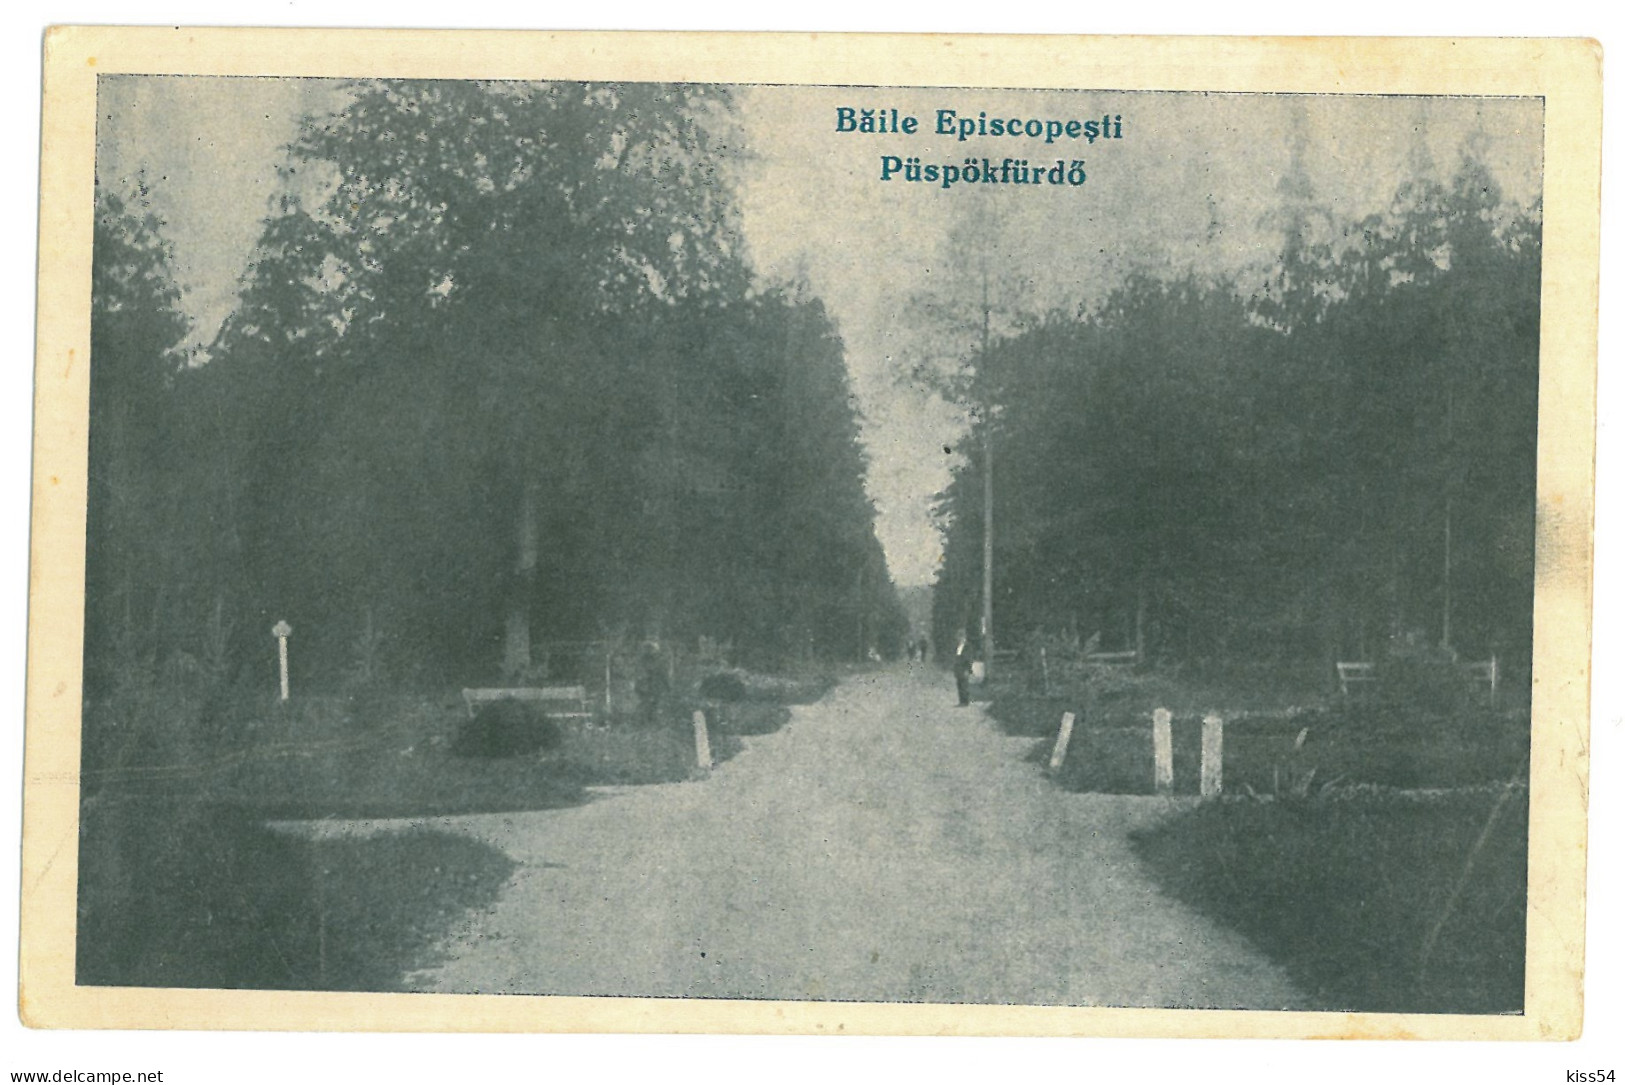 RO 82 - 23781 ORADEA, Baile Episcopesti ( 1 Mai ), Romania - Old Postcard - Unused - Rumania